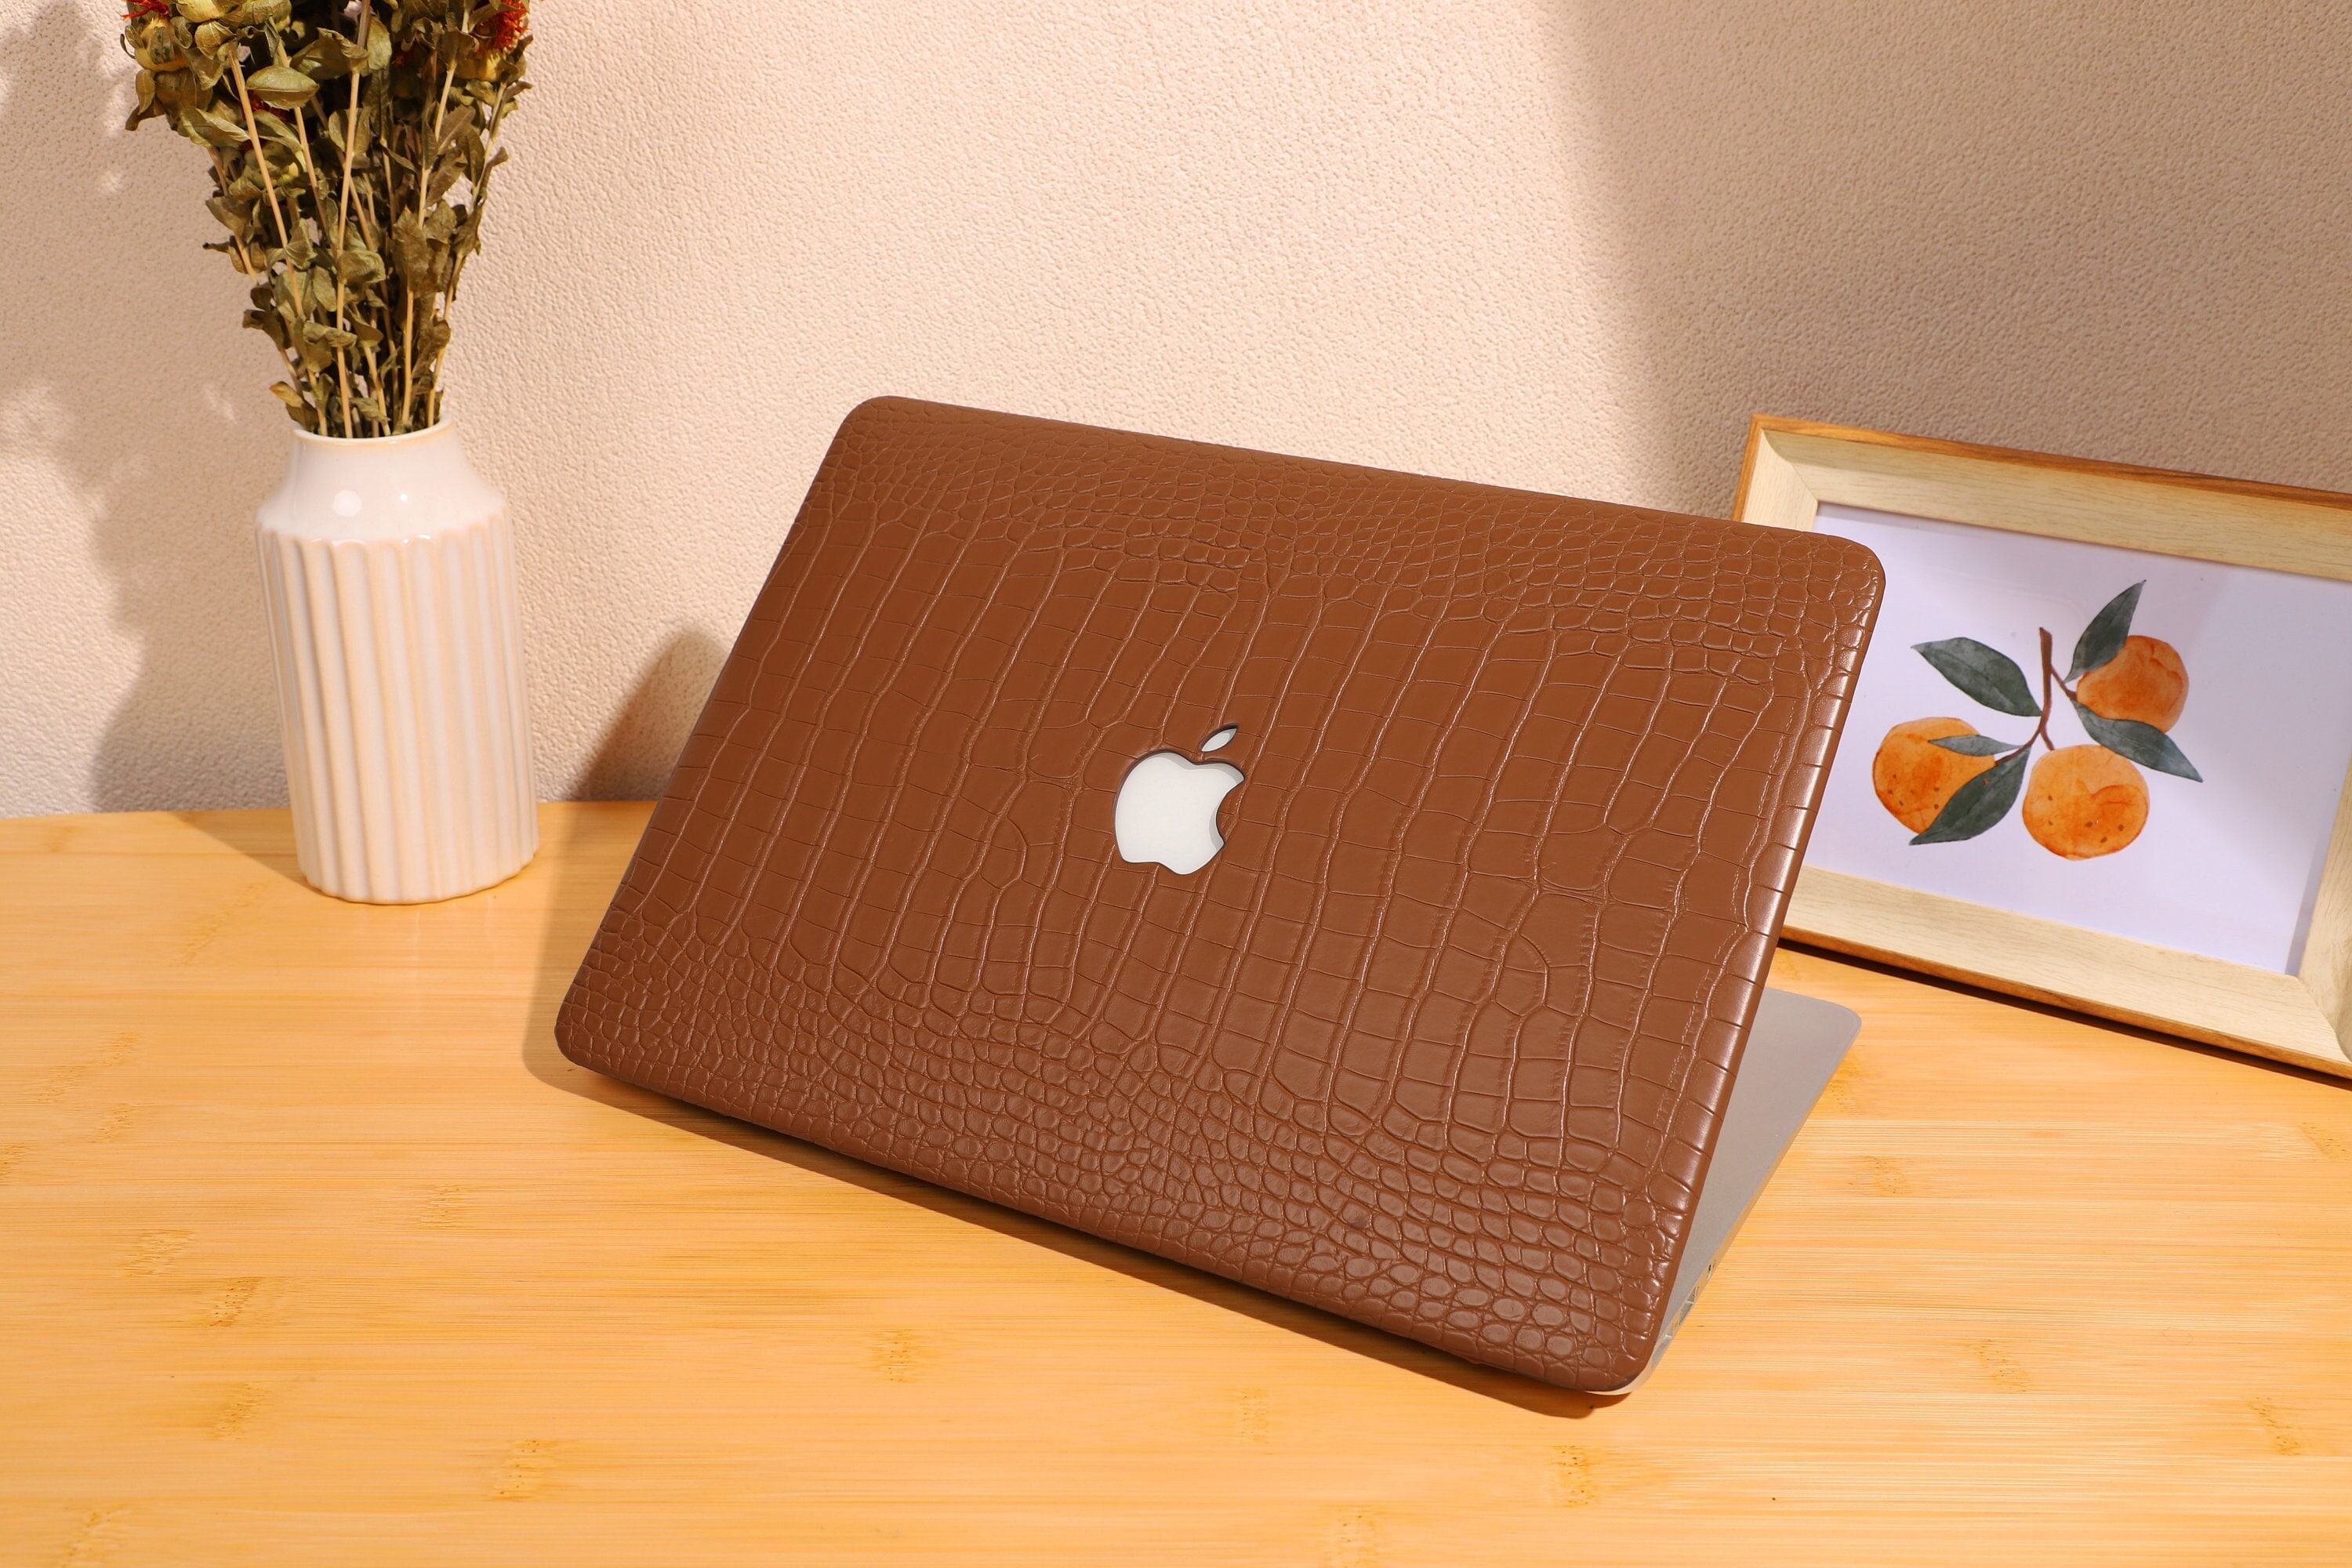 Coque MacBook Pro 16 pouces Motif Marbre - Blanc  Macbook air case 13  inch, Macbook accessories, Macbook pro 13 inch